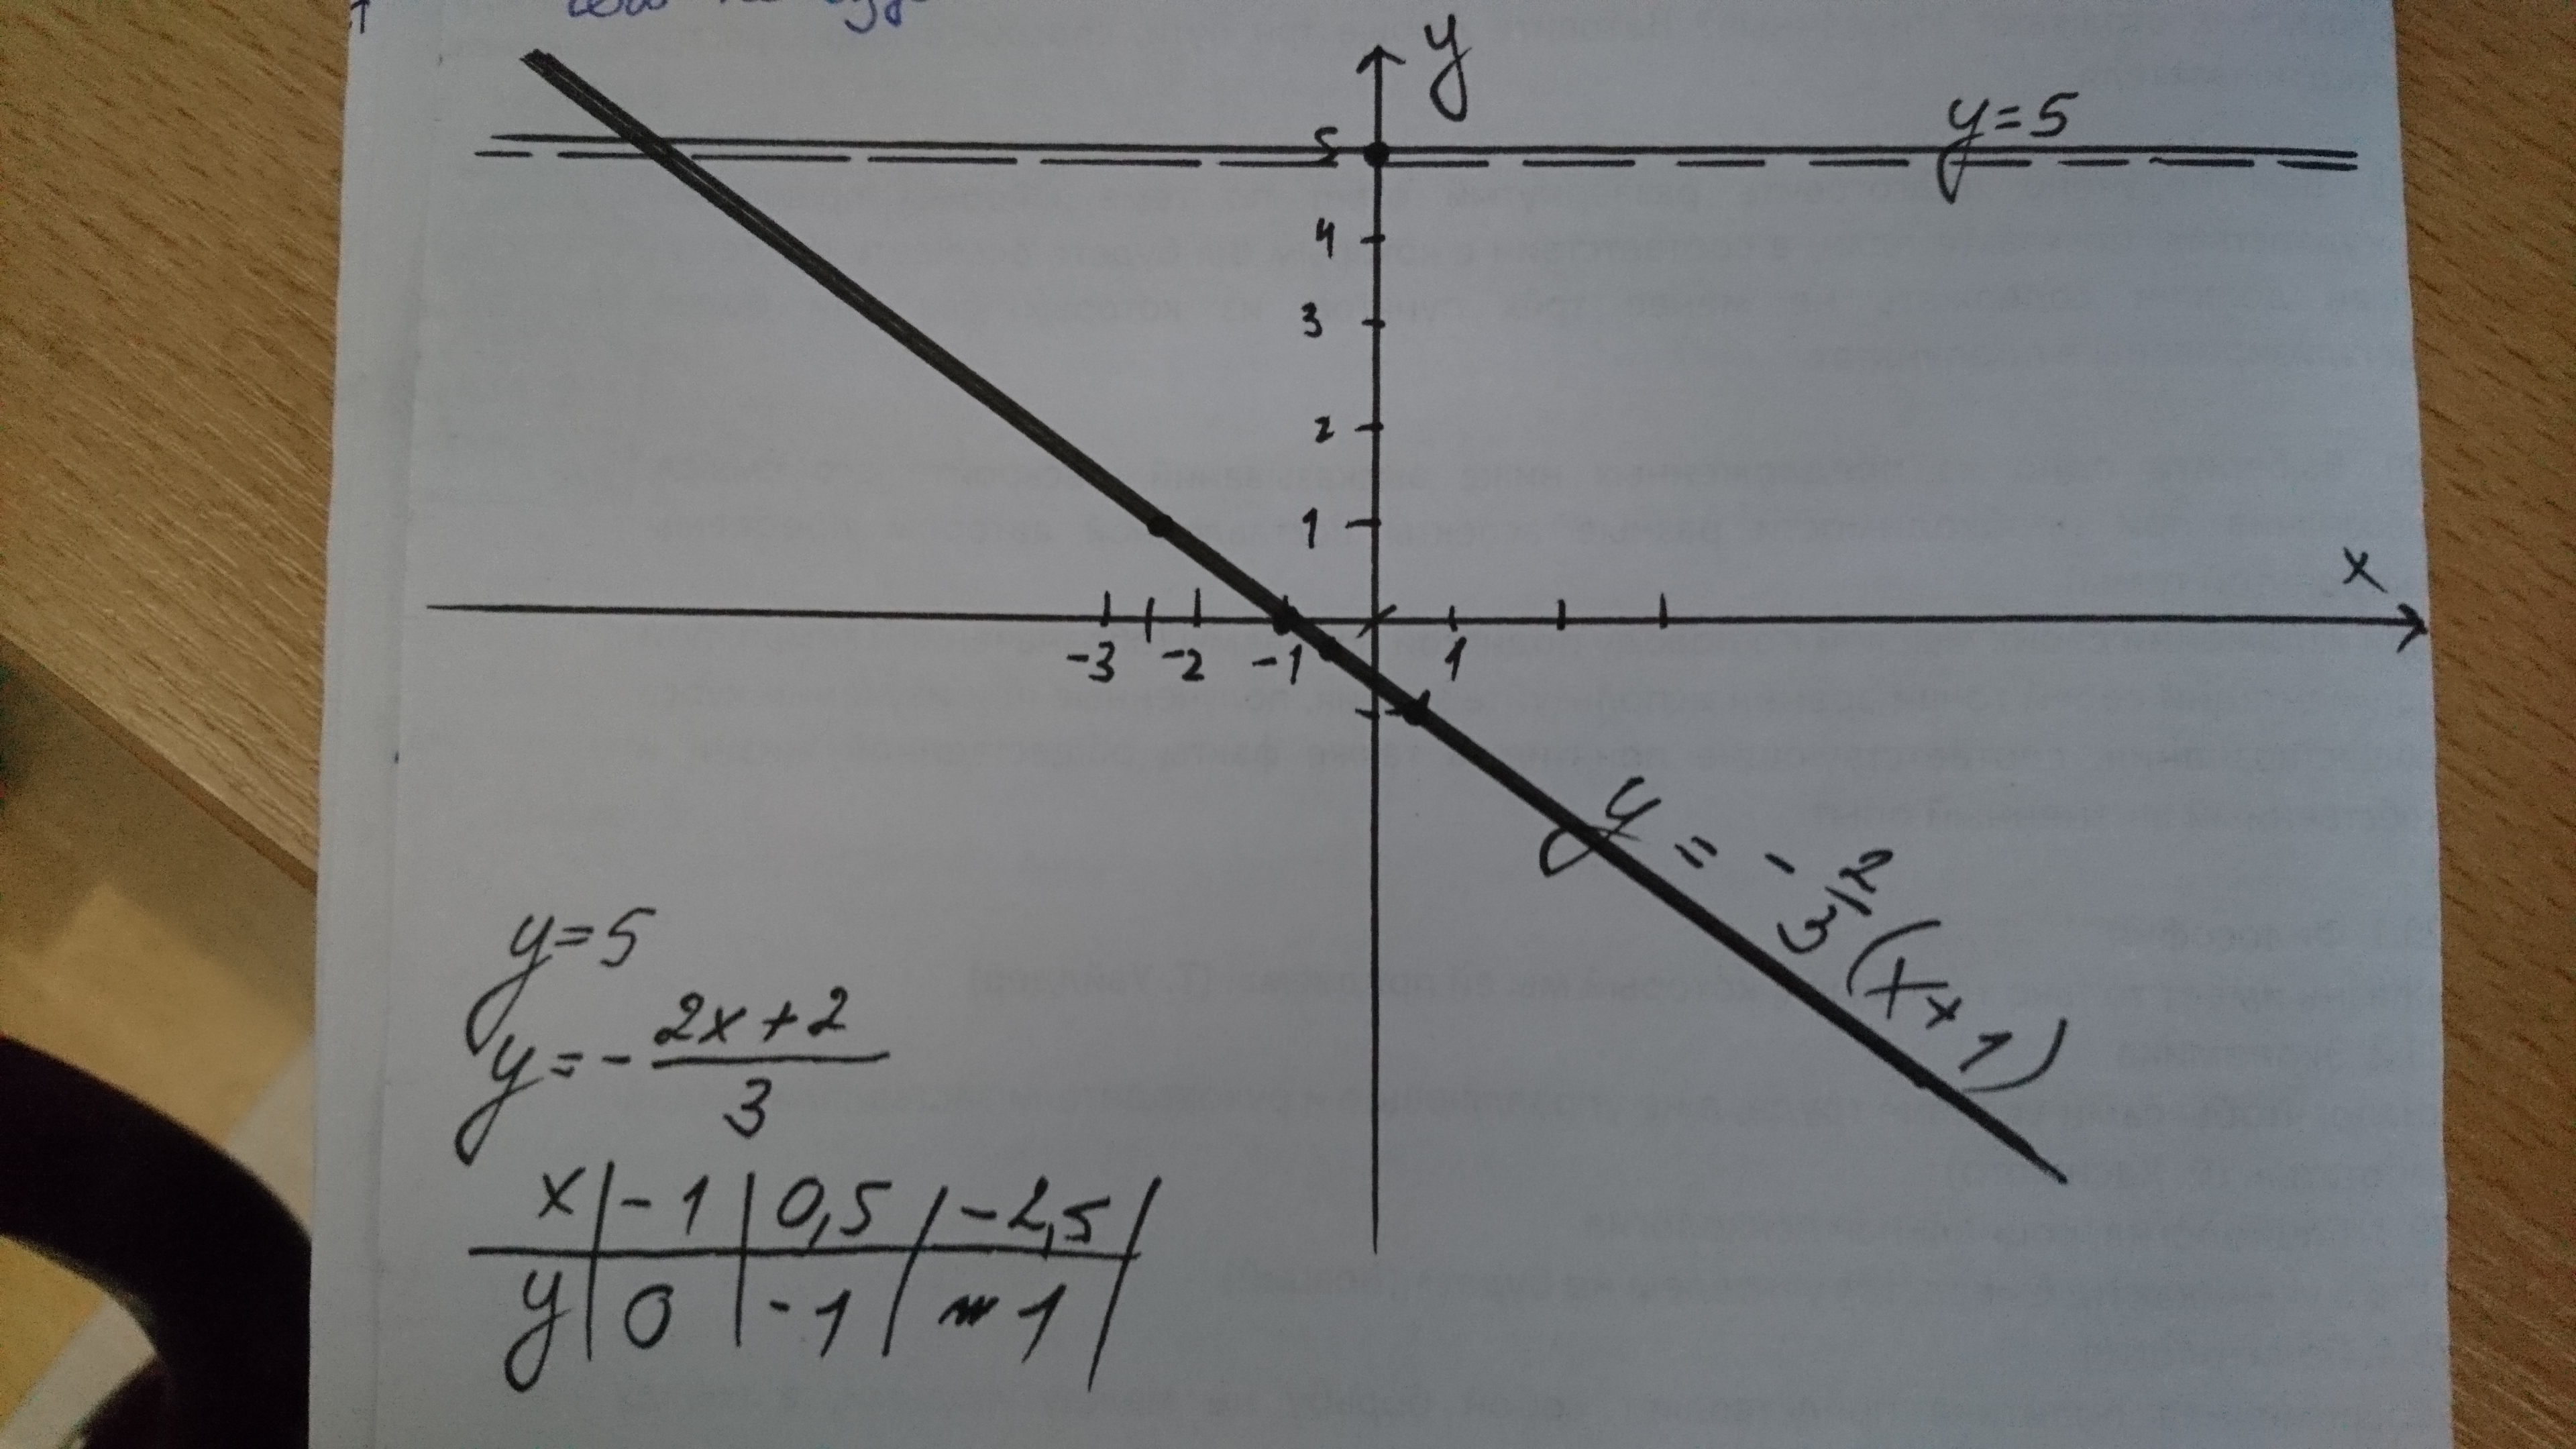 Постройте прямую у 2х 6. Y 0 5x 2 прямая. Построения прямой y=3x+2. Y=2x2. Построить прямую 3x+2.